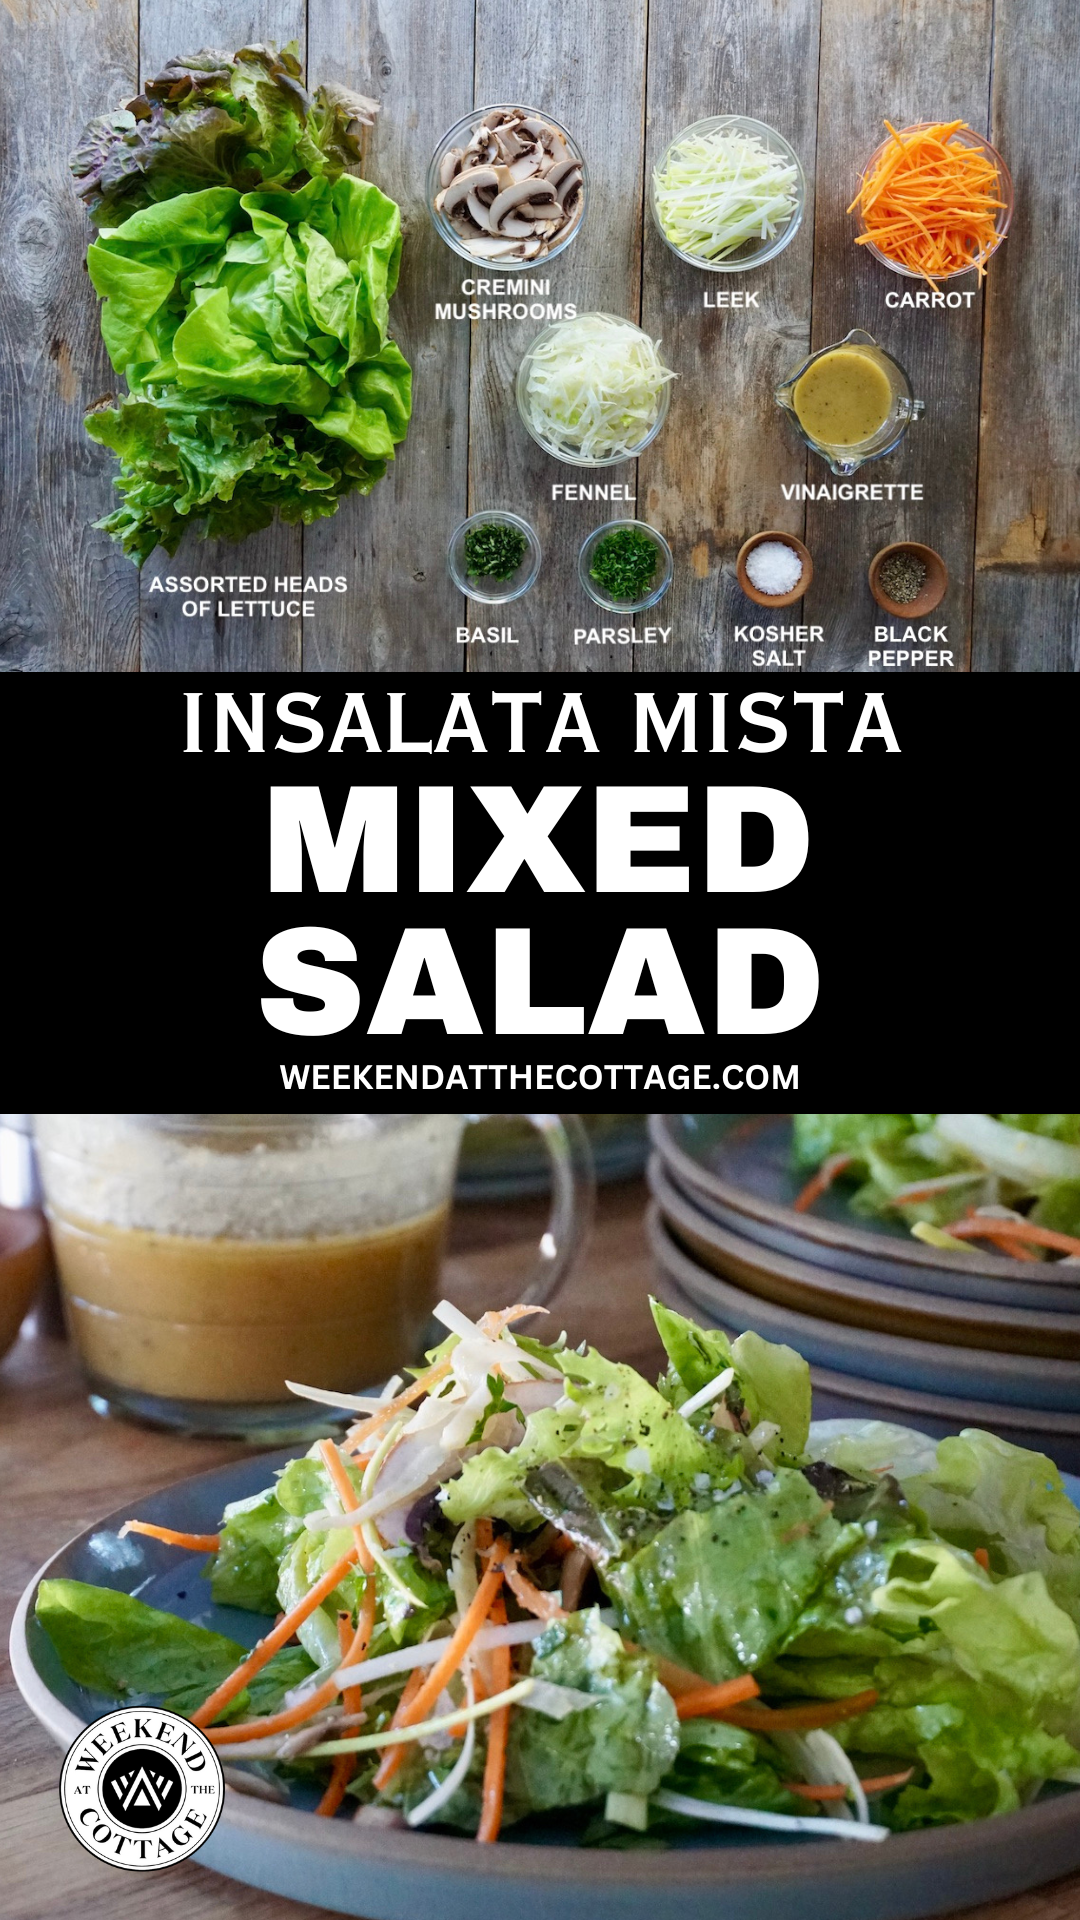 Mixed Salad Recipe